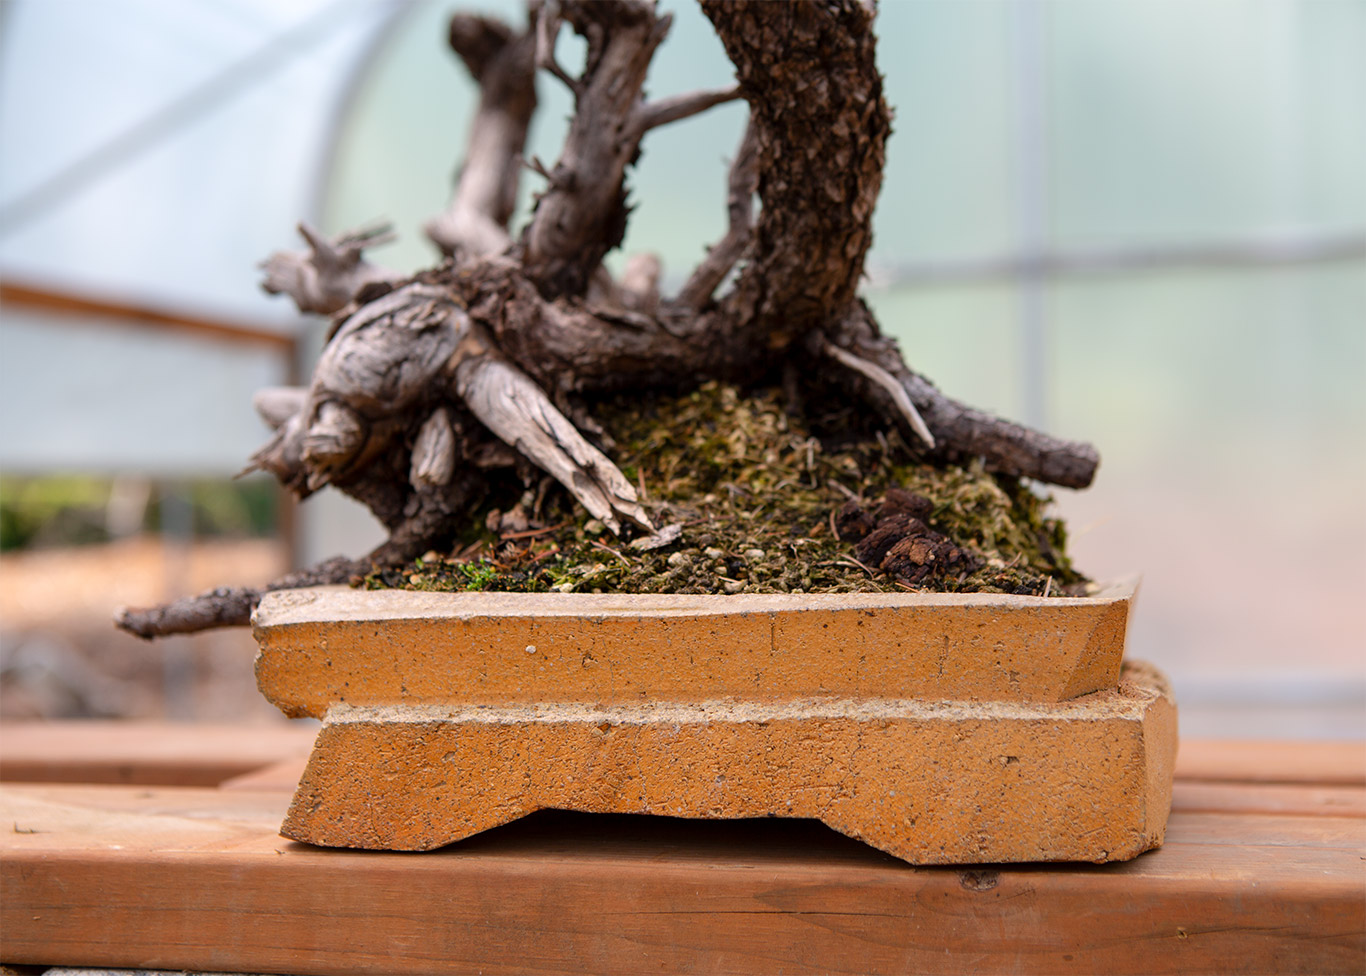 15Jonathan_cross_ceramics_bonsai